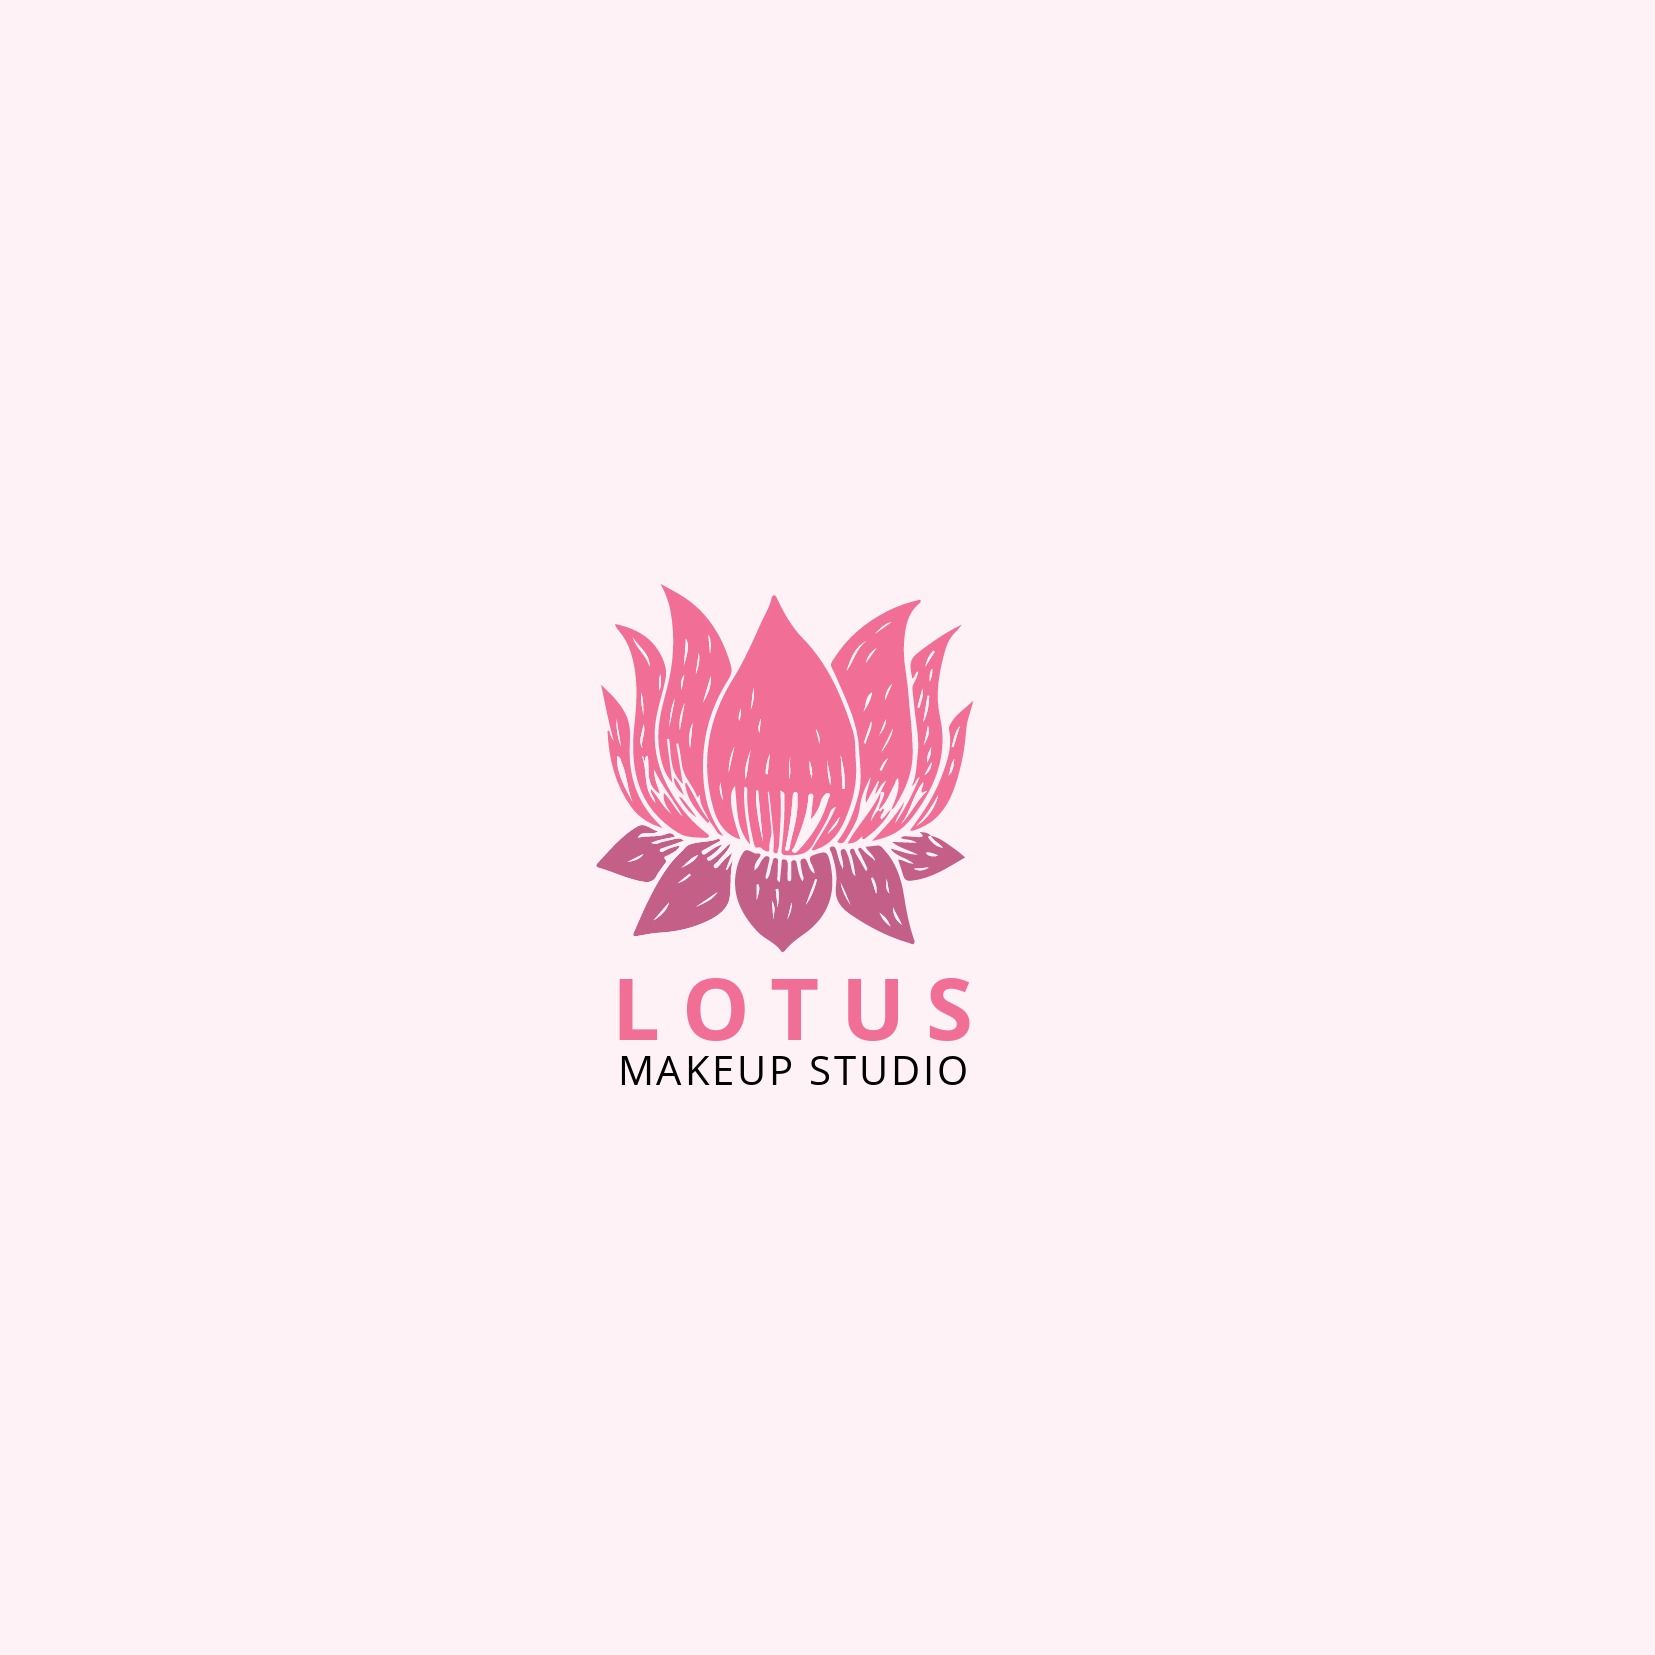 Logotipo de Lotus Makeup Studio sobre un fondo blanco. La fuente Open Sans es abierta y legible. Imagen